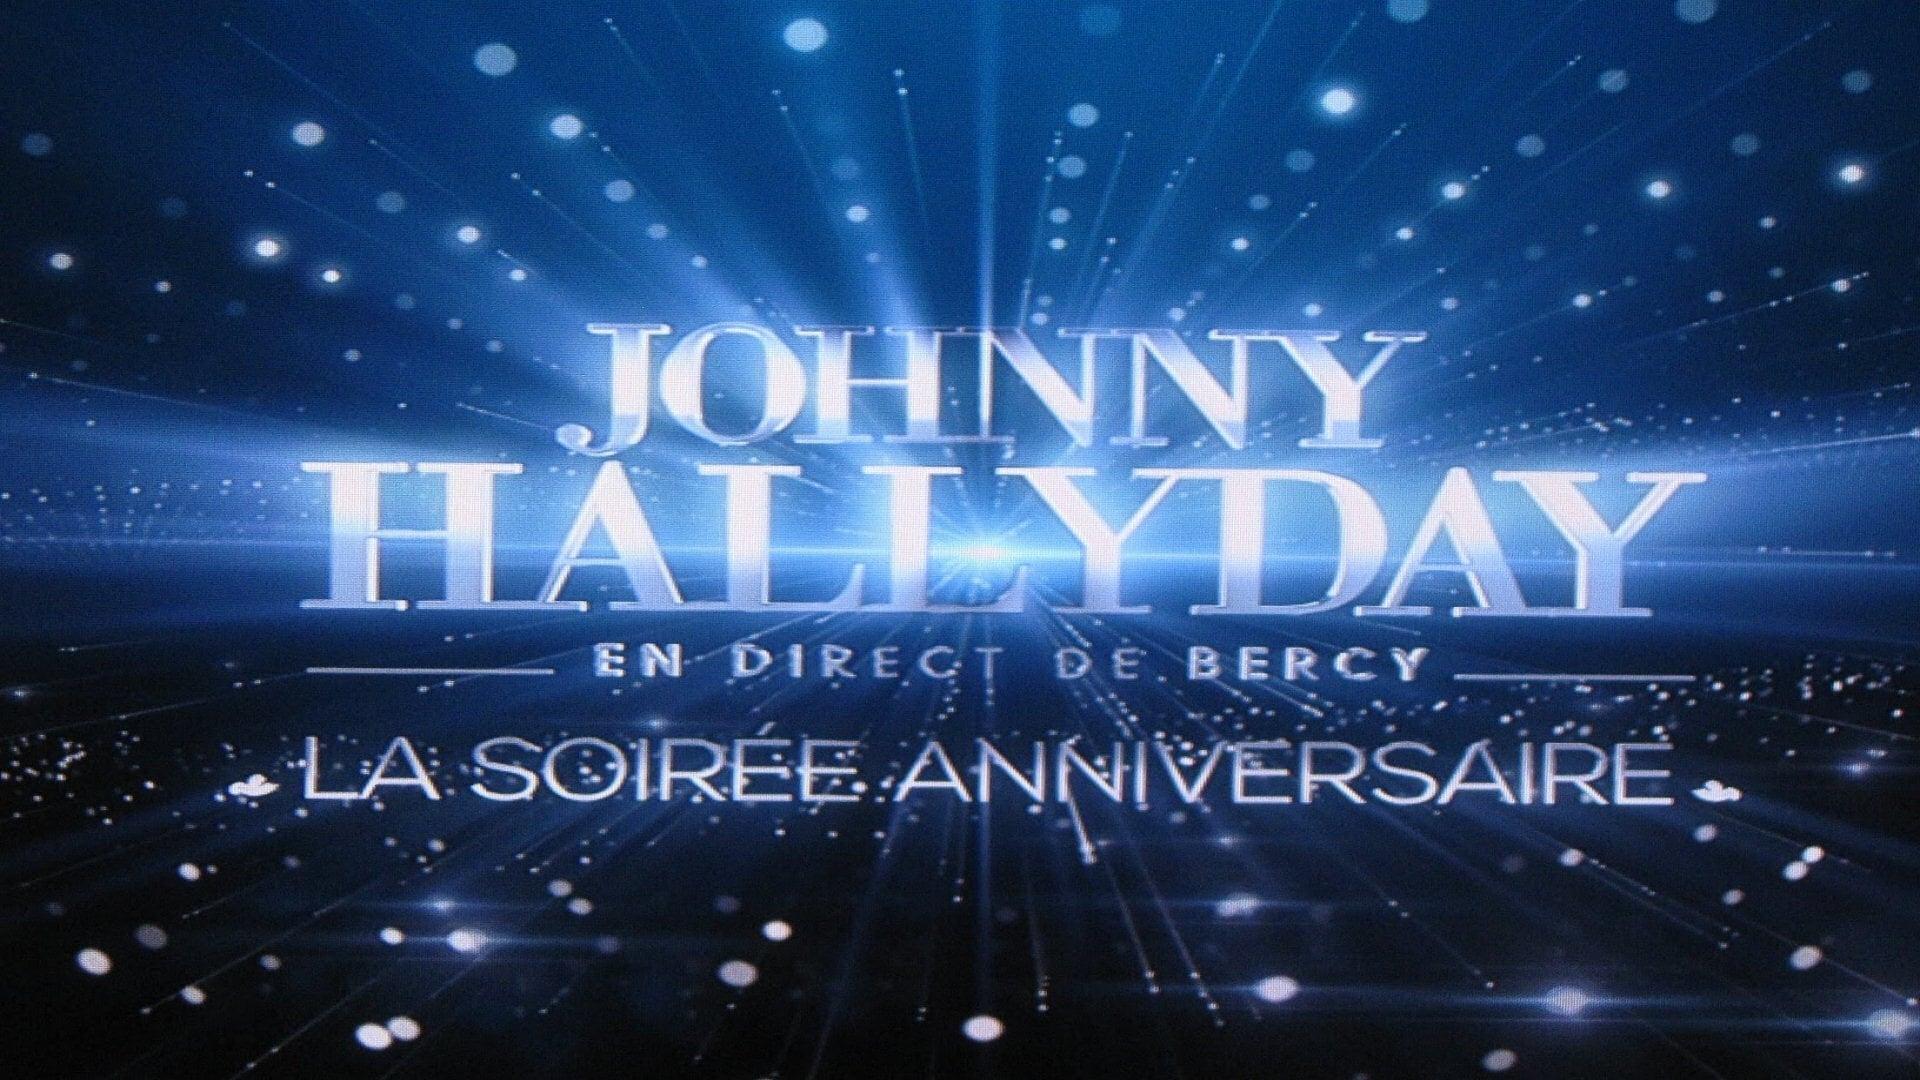 Johnny Hallyday en direct de Bercy, La Soirée Anniversaire backdrop